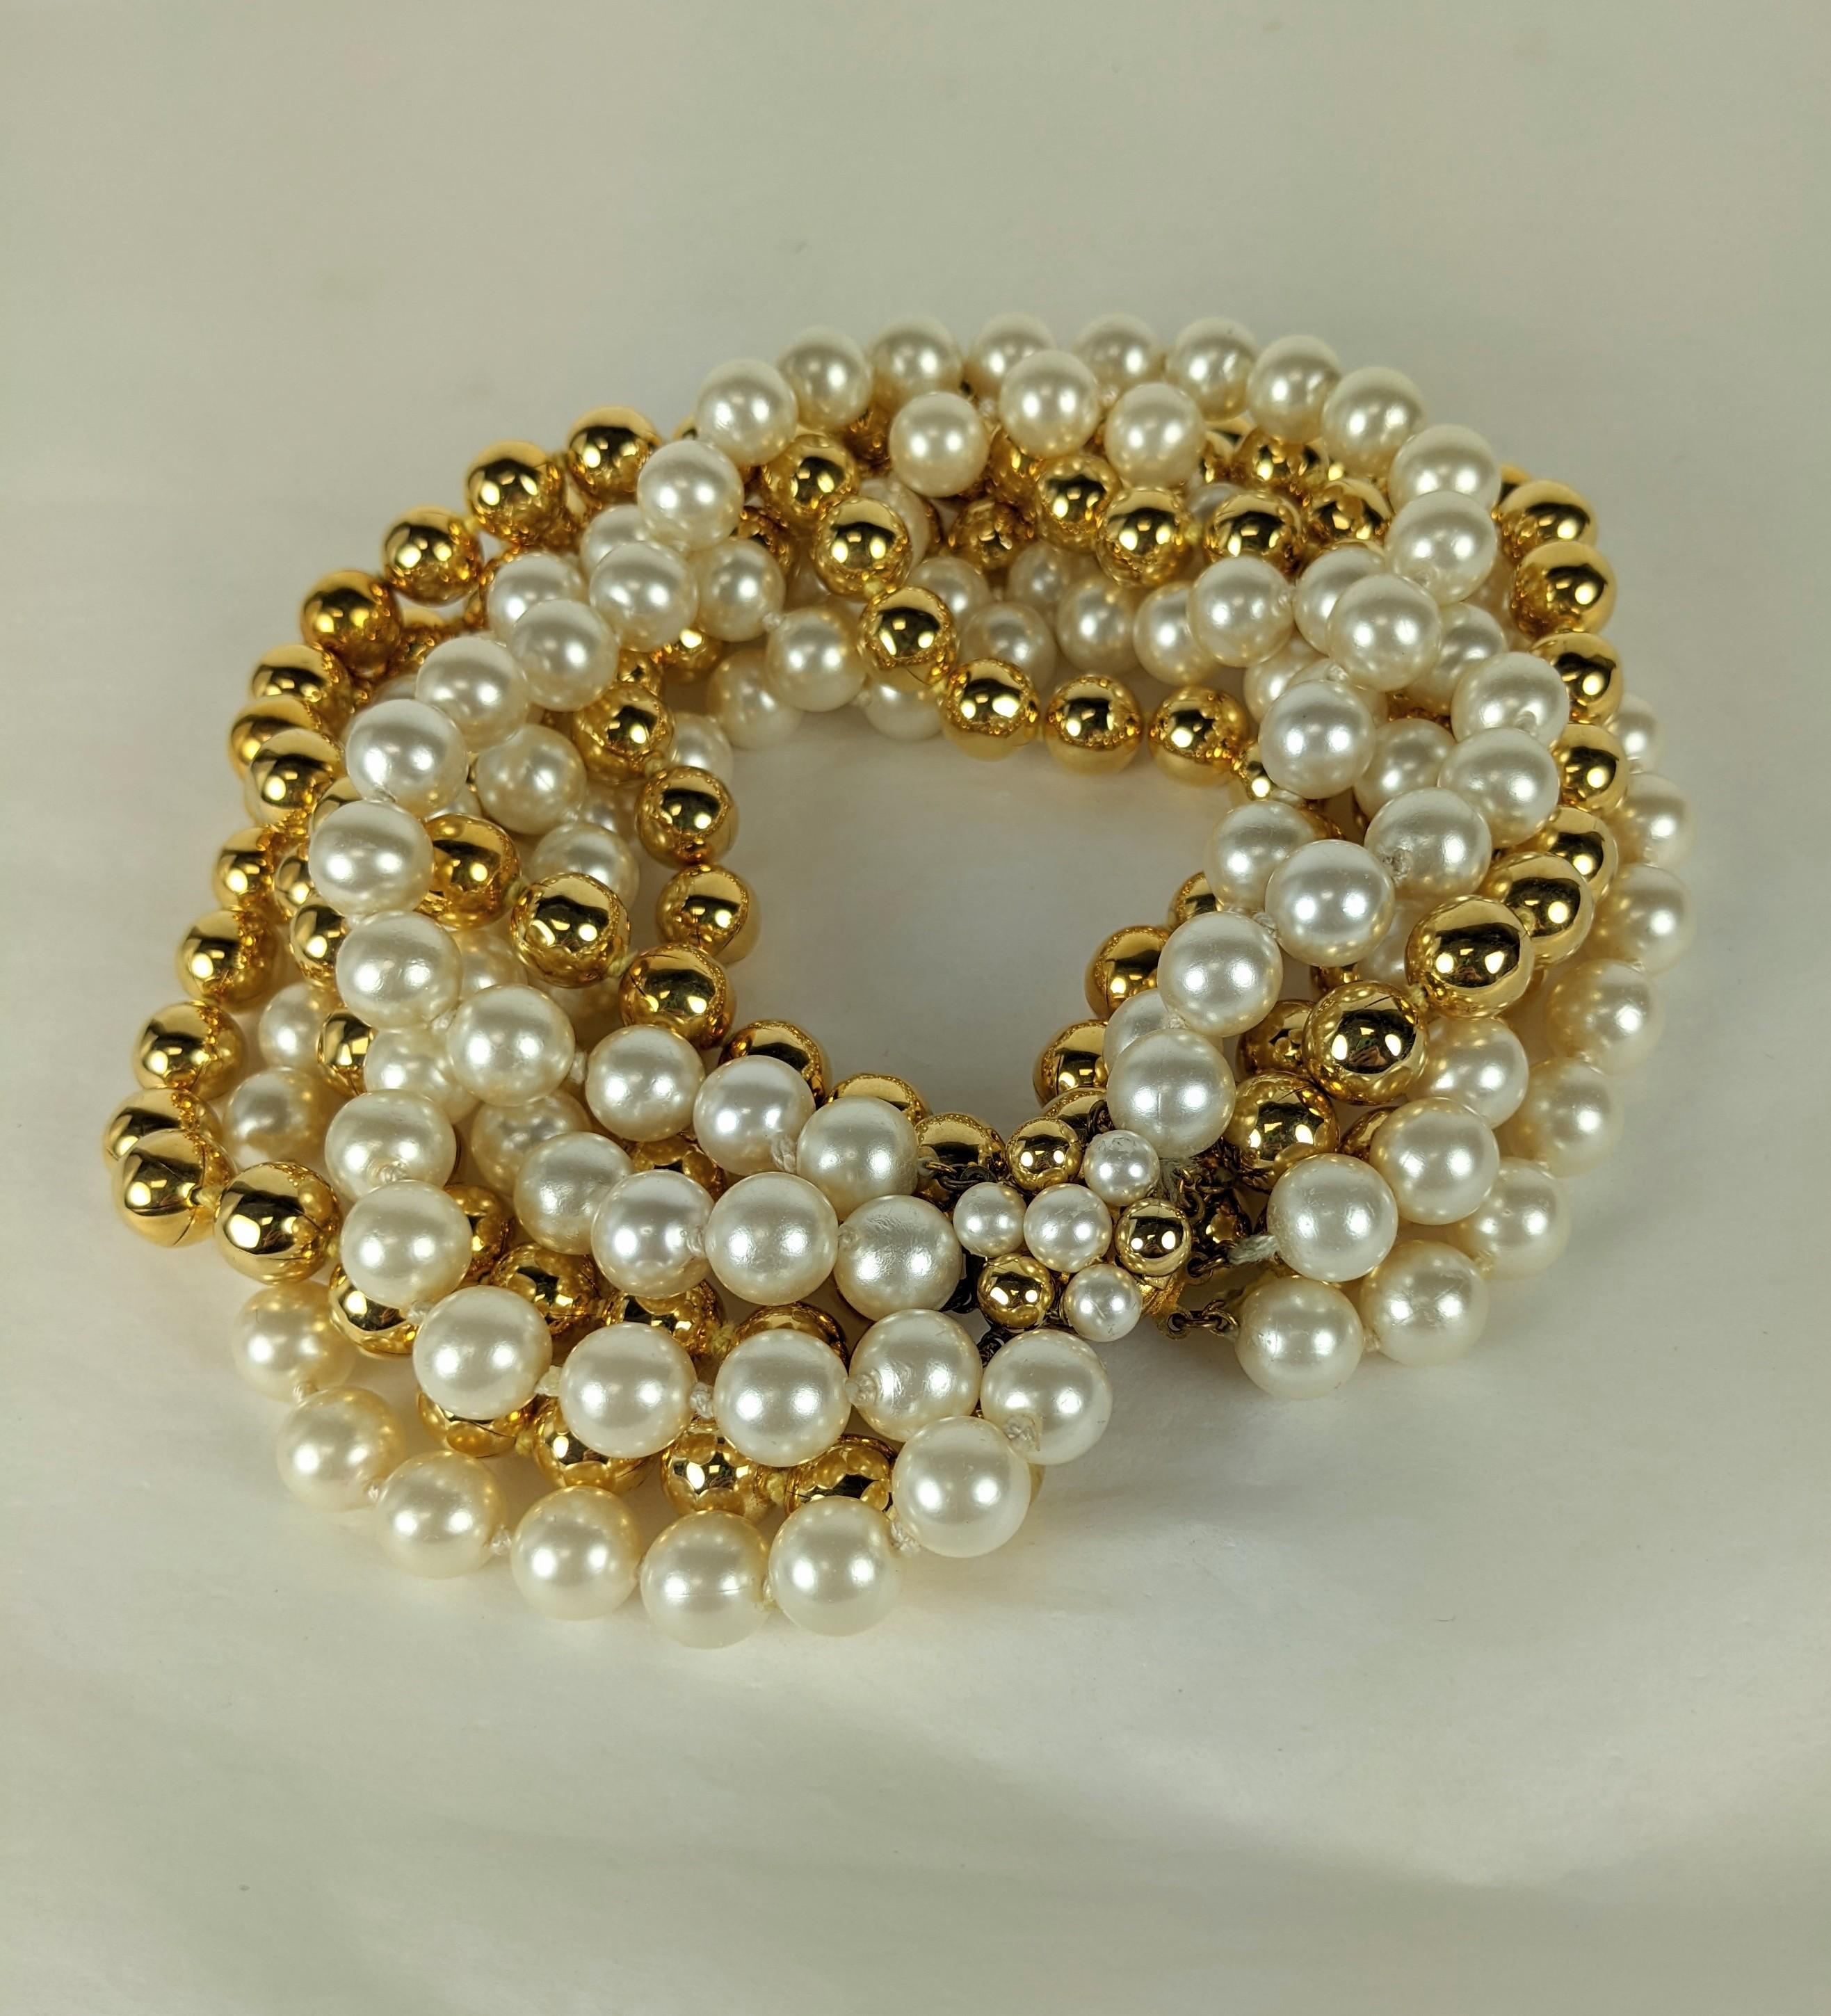 Collier torsade libre multi perles Givenchy Bunny Mellon Haute Couture. De perles en résine de nacre et de perles dorées qui repose haut sur le cou à porter avec la sévérité d'une simple robe ou d'un pull dans le style typique des années 50,  Non